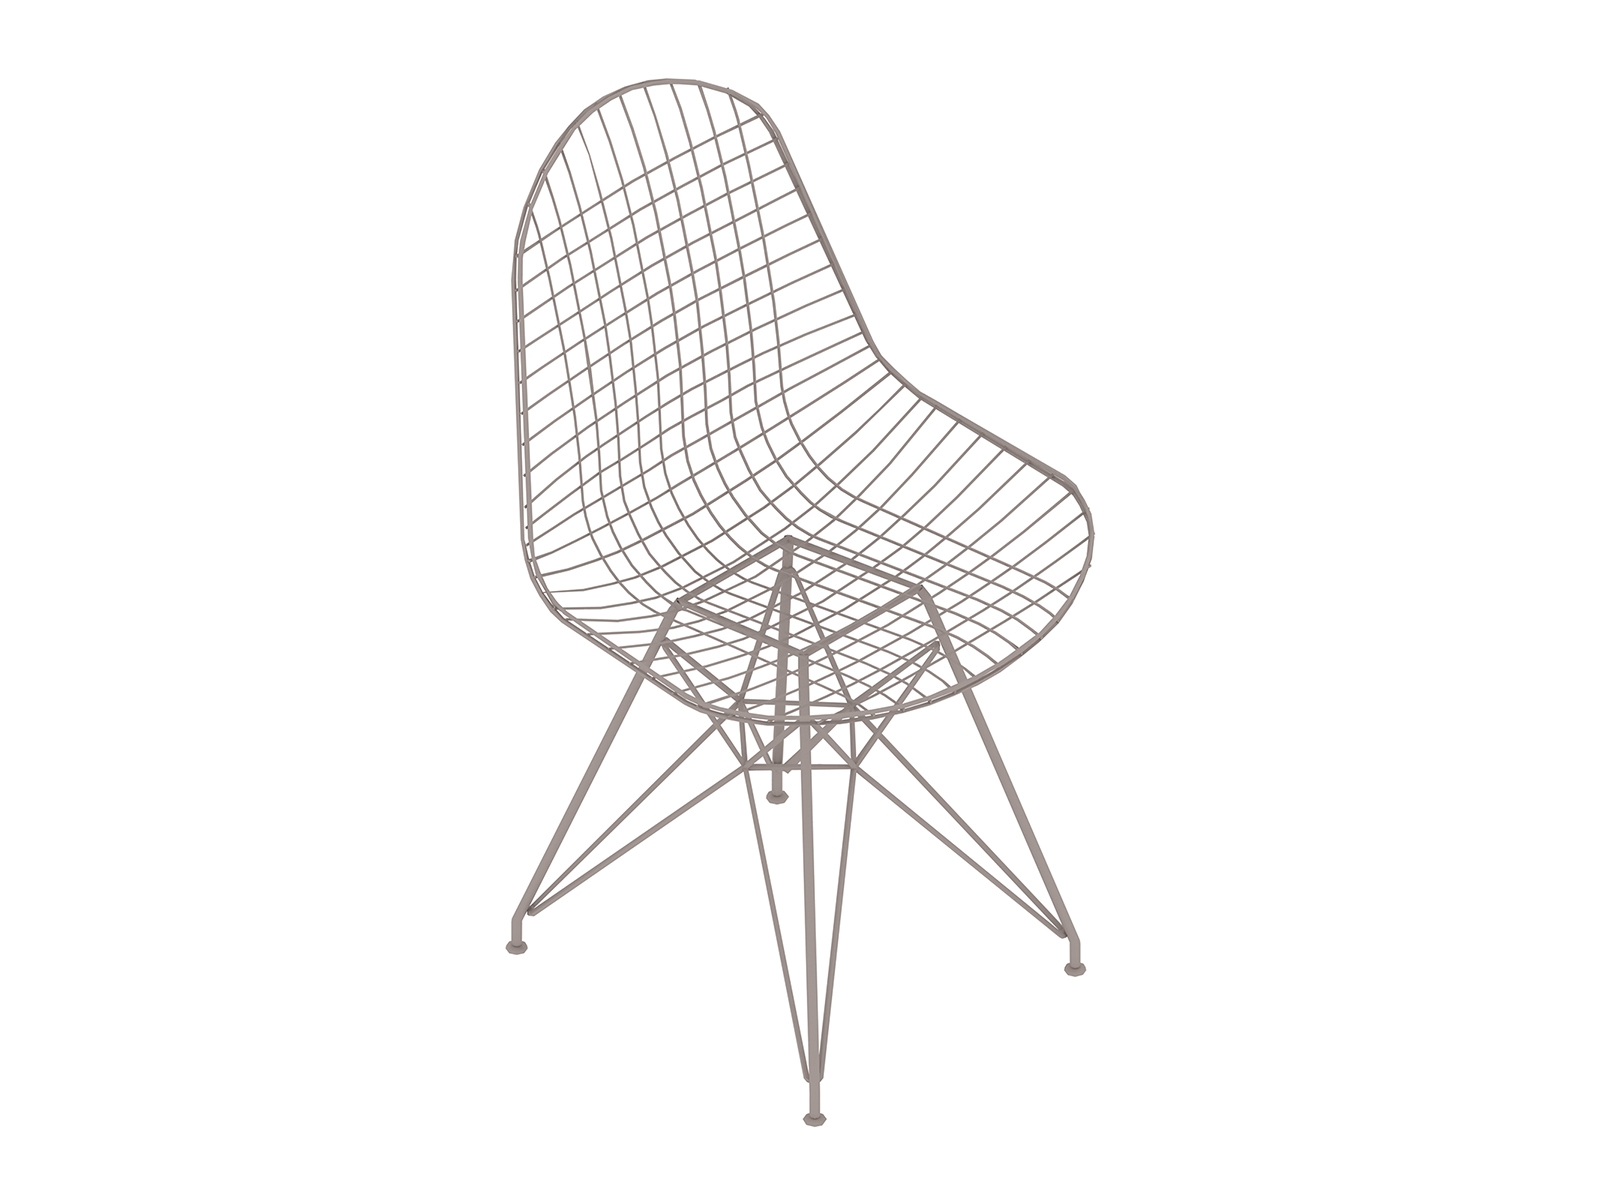 Una representación genérica - Silla Eames Wire con base de alambre, sin tapizar